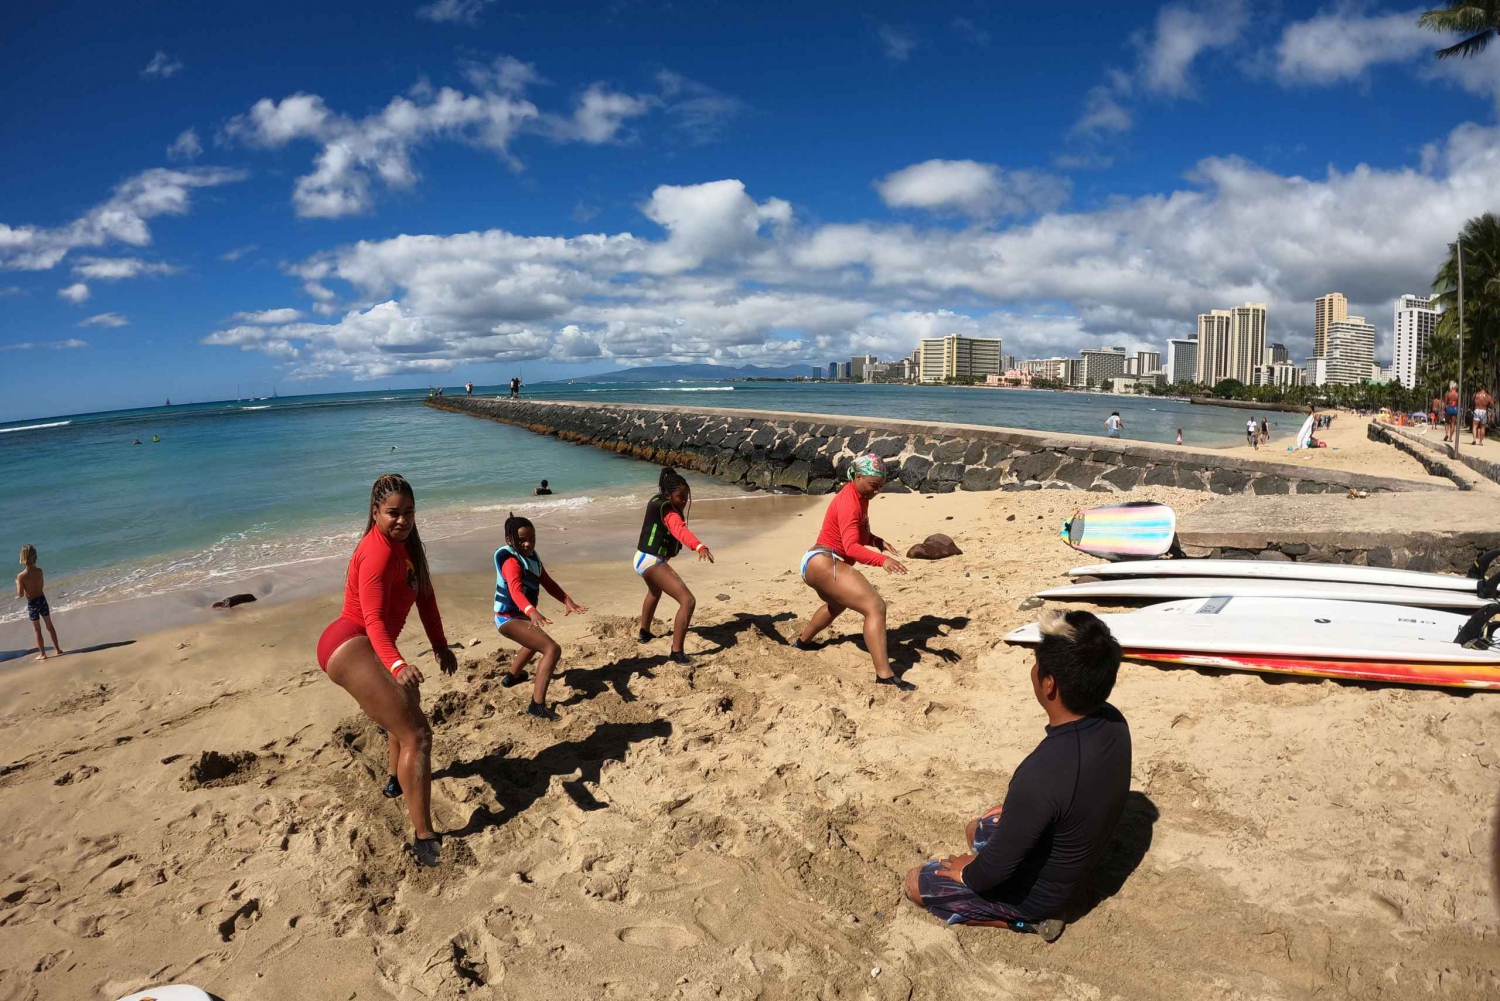 Surfinglektion för familj: 1 förälder, 1 barn under 13 år och andra